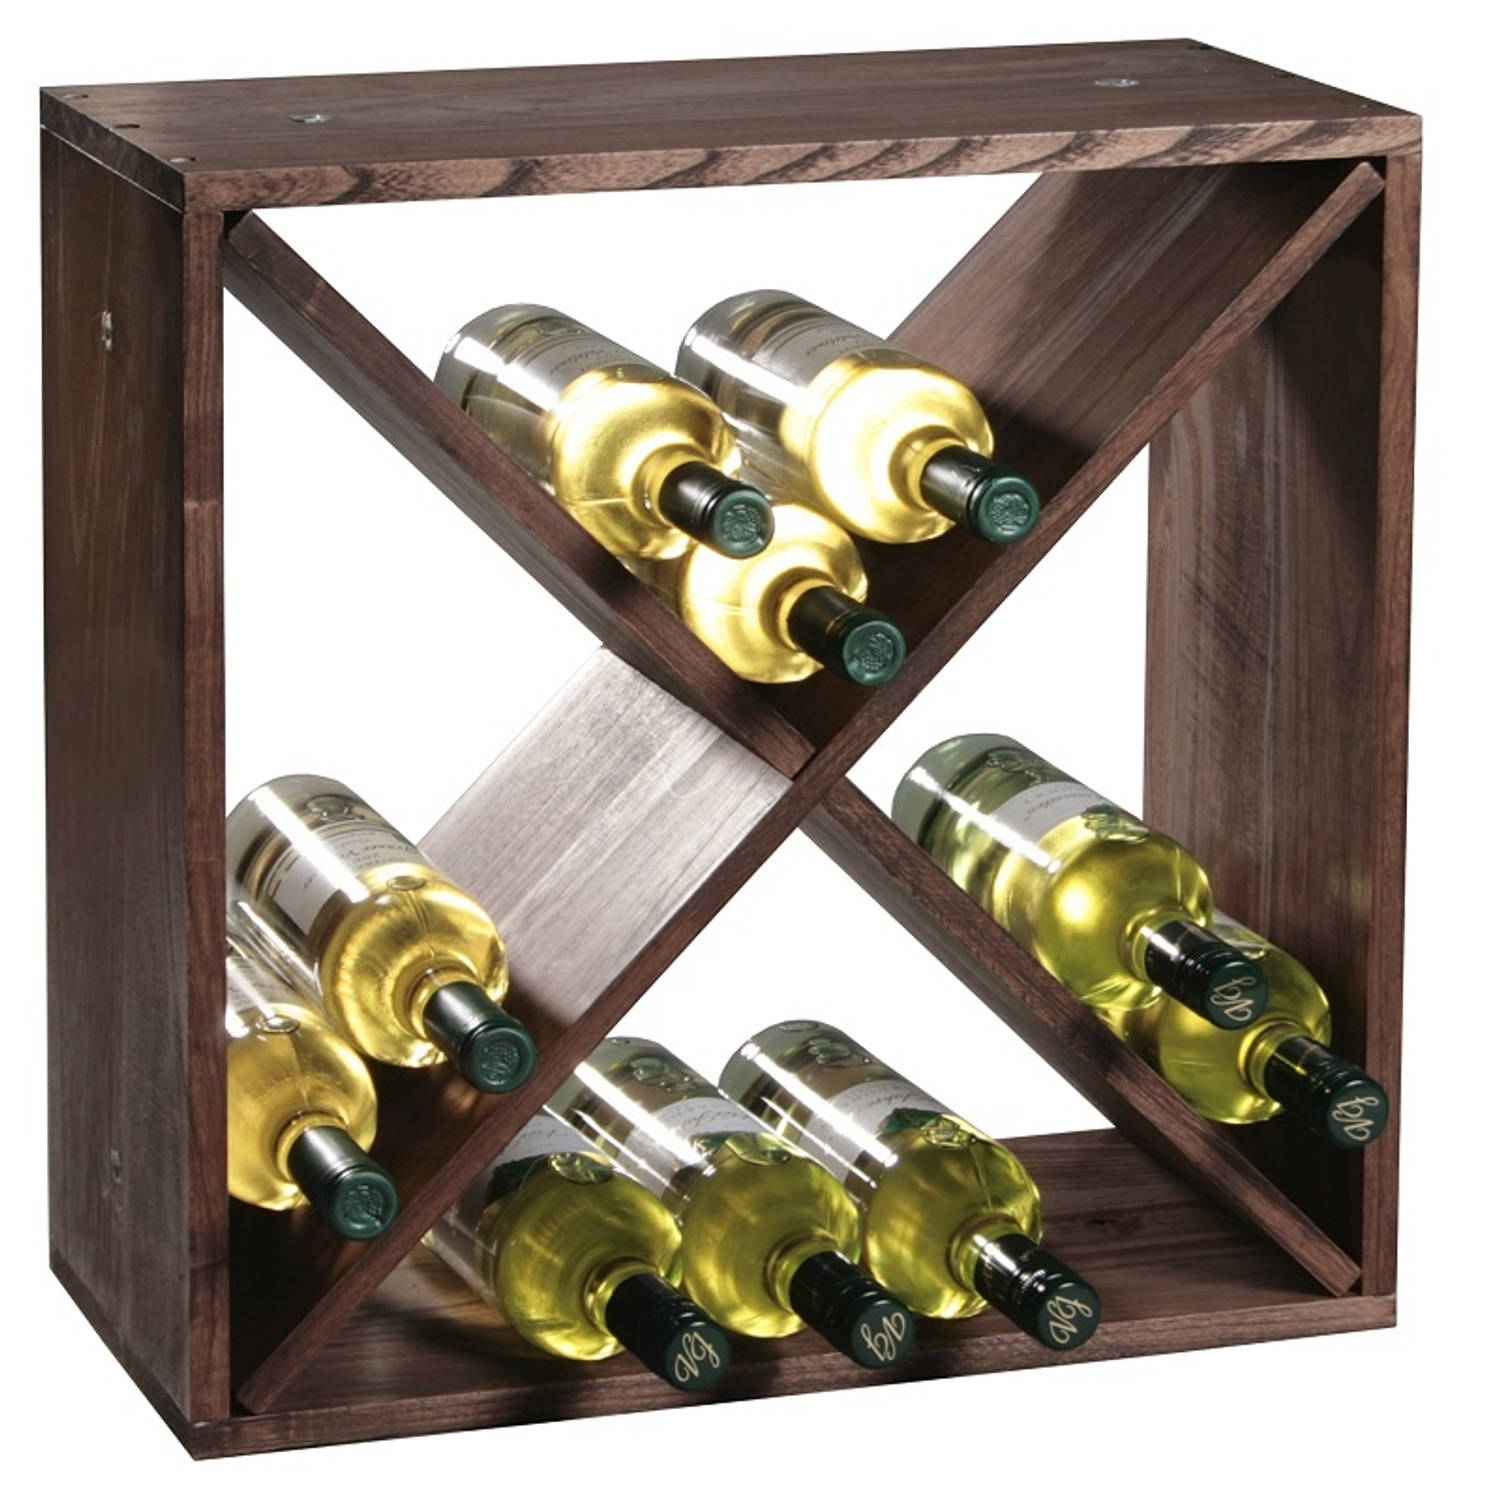 Fsc® Houten Wijnflessen Legbordsysteem Voor 20 Wijn Flessen Wijnrek